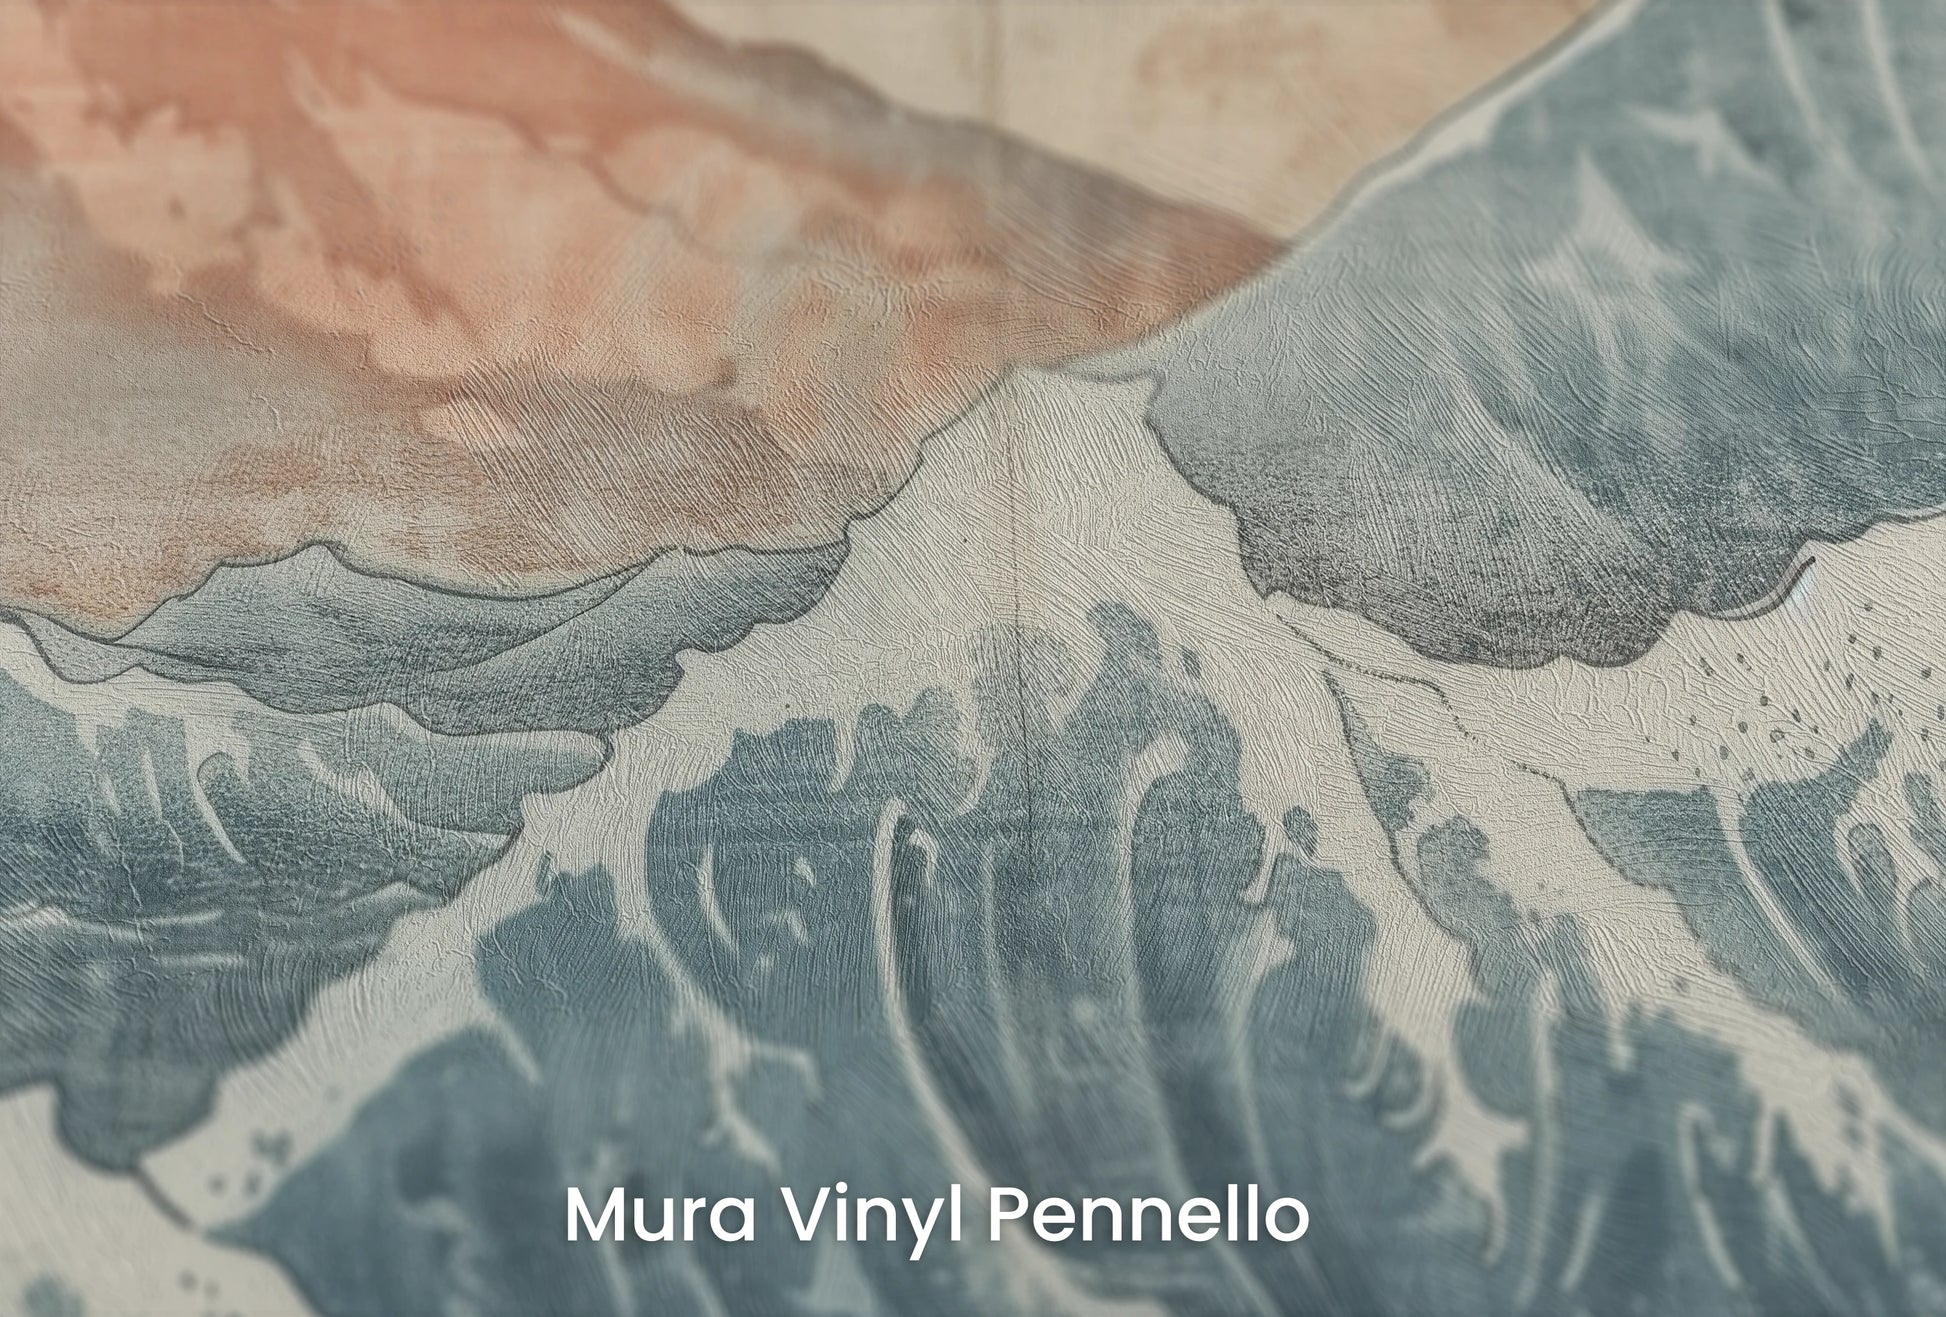 Zbliżenie na artystyczną fototapetę o nazwie Dawn over Fuji na podłożu Mura Vinyl Pennello - faktura pociągnięć pędzla malarskiego.